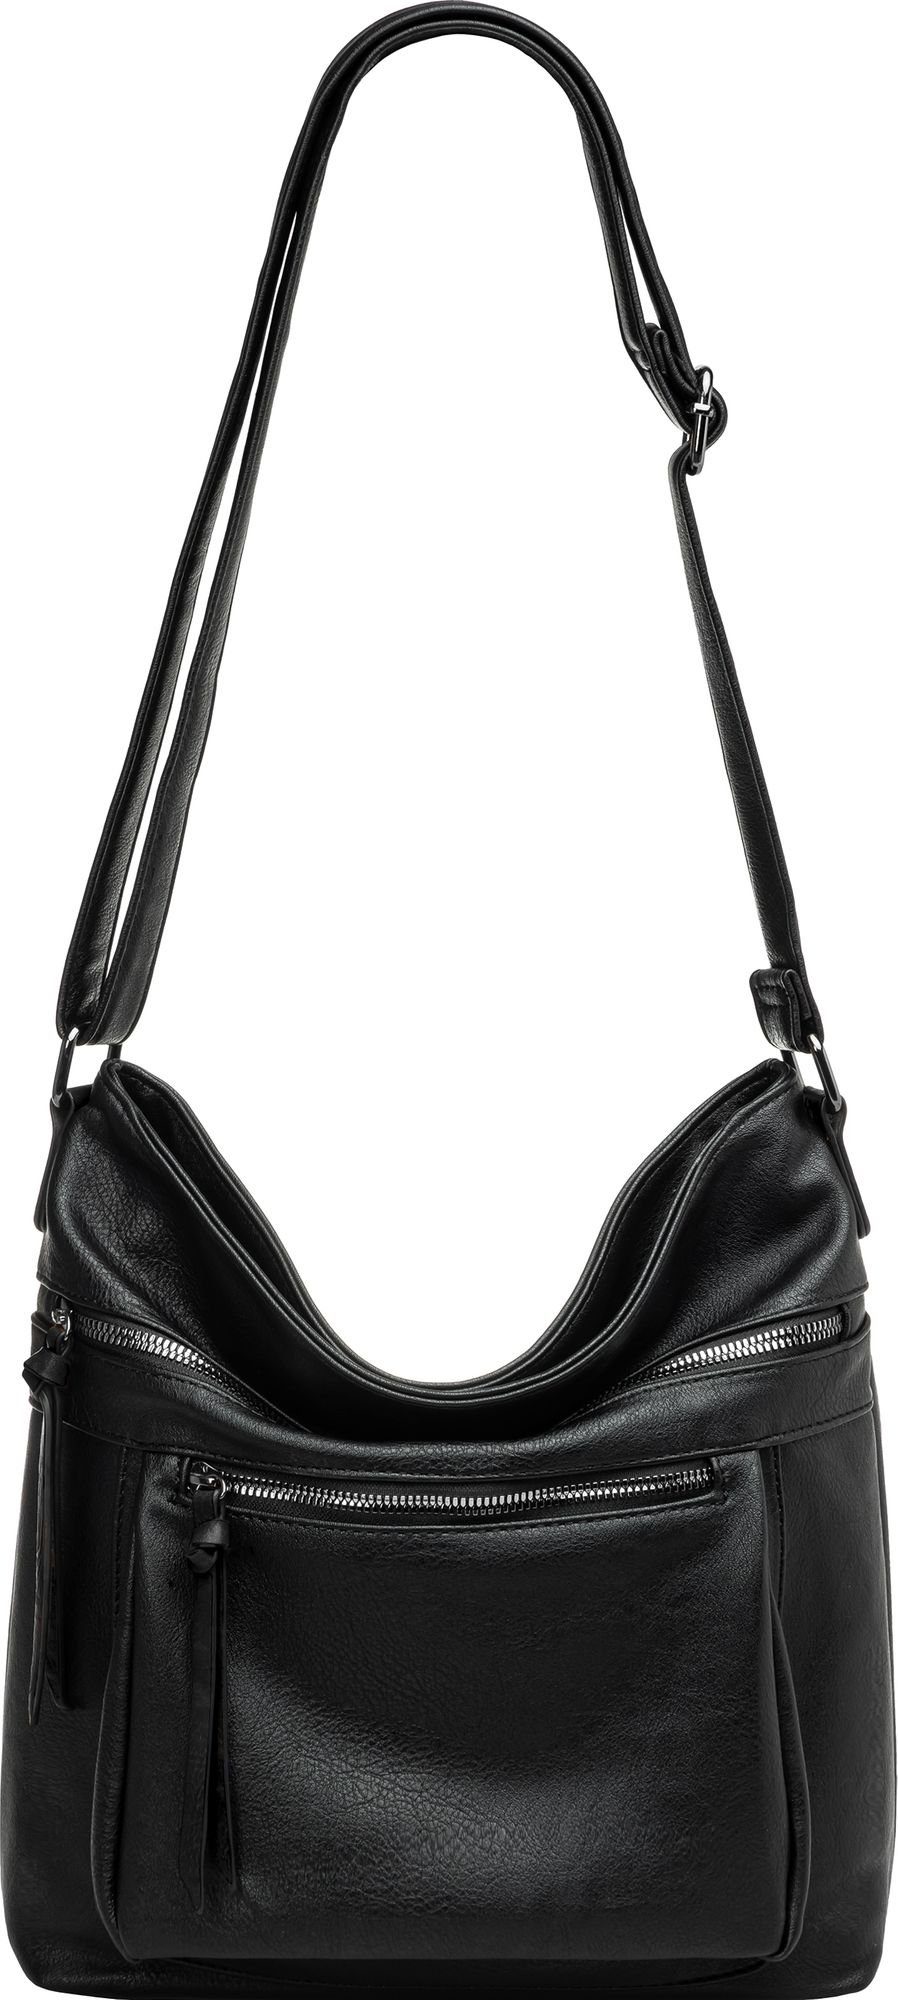 TS1070 Crossbody sportlich Umhängetasche schwarz Damen elegante mittelgroße Umhängetasche Bag Caspar